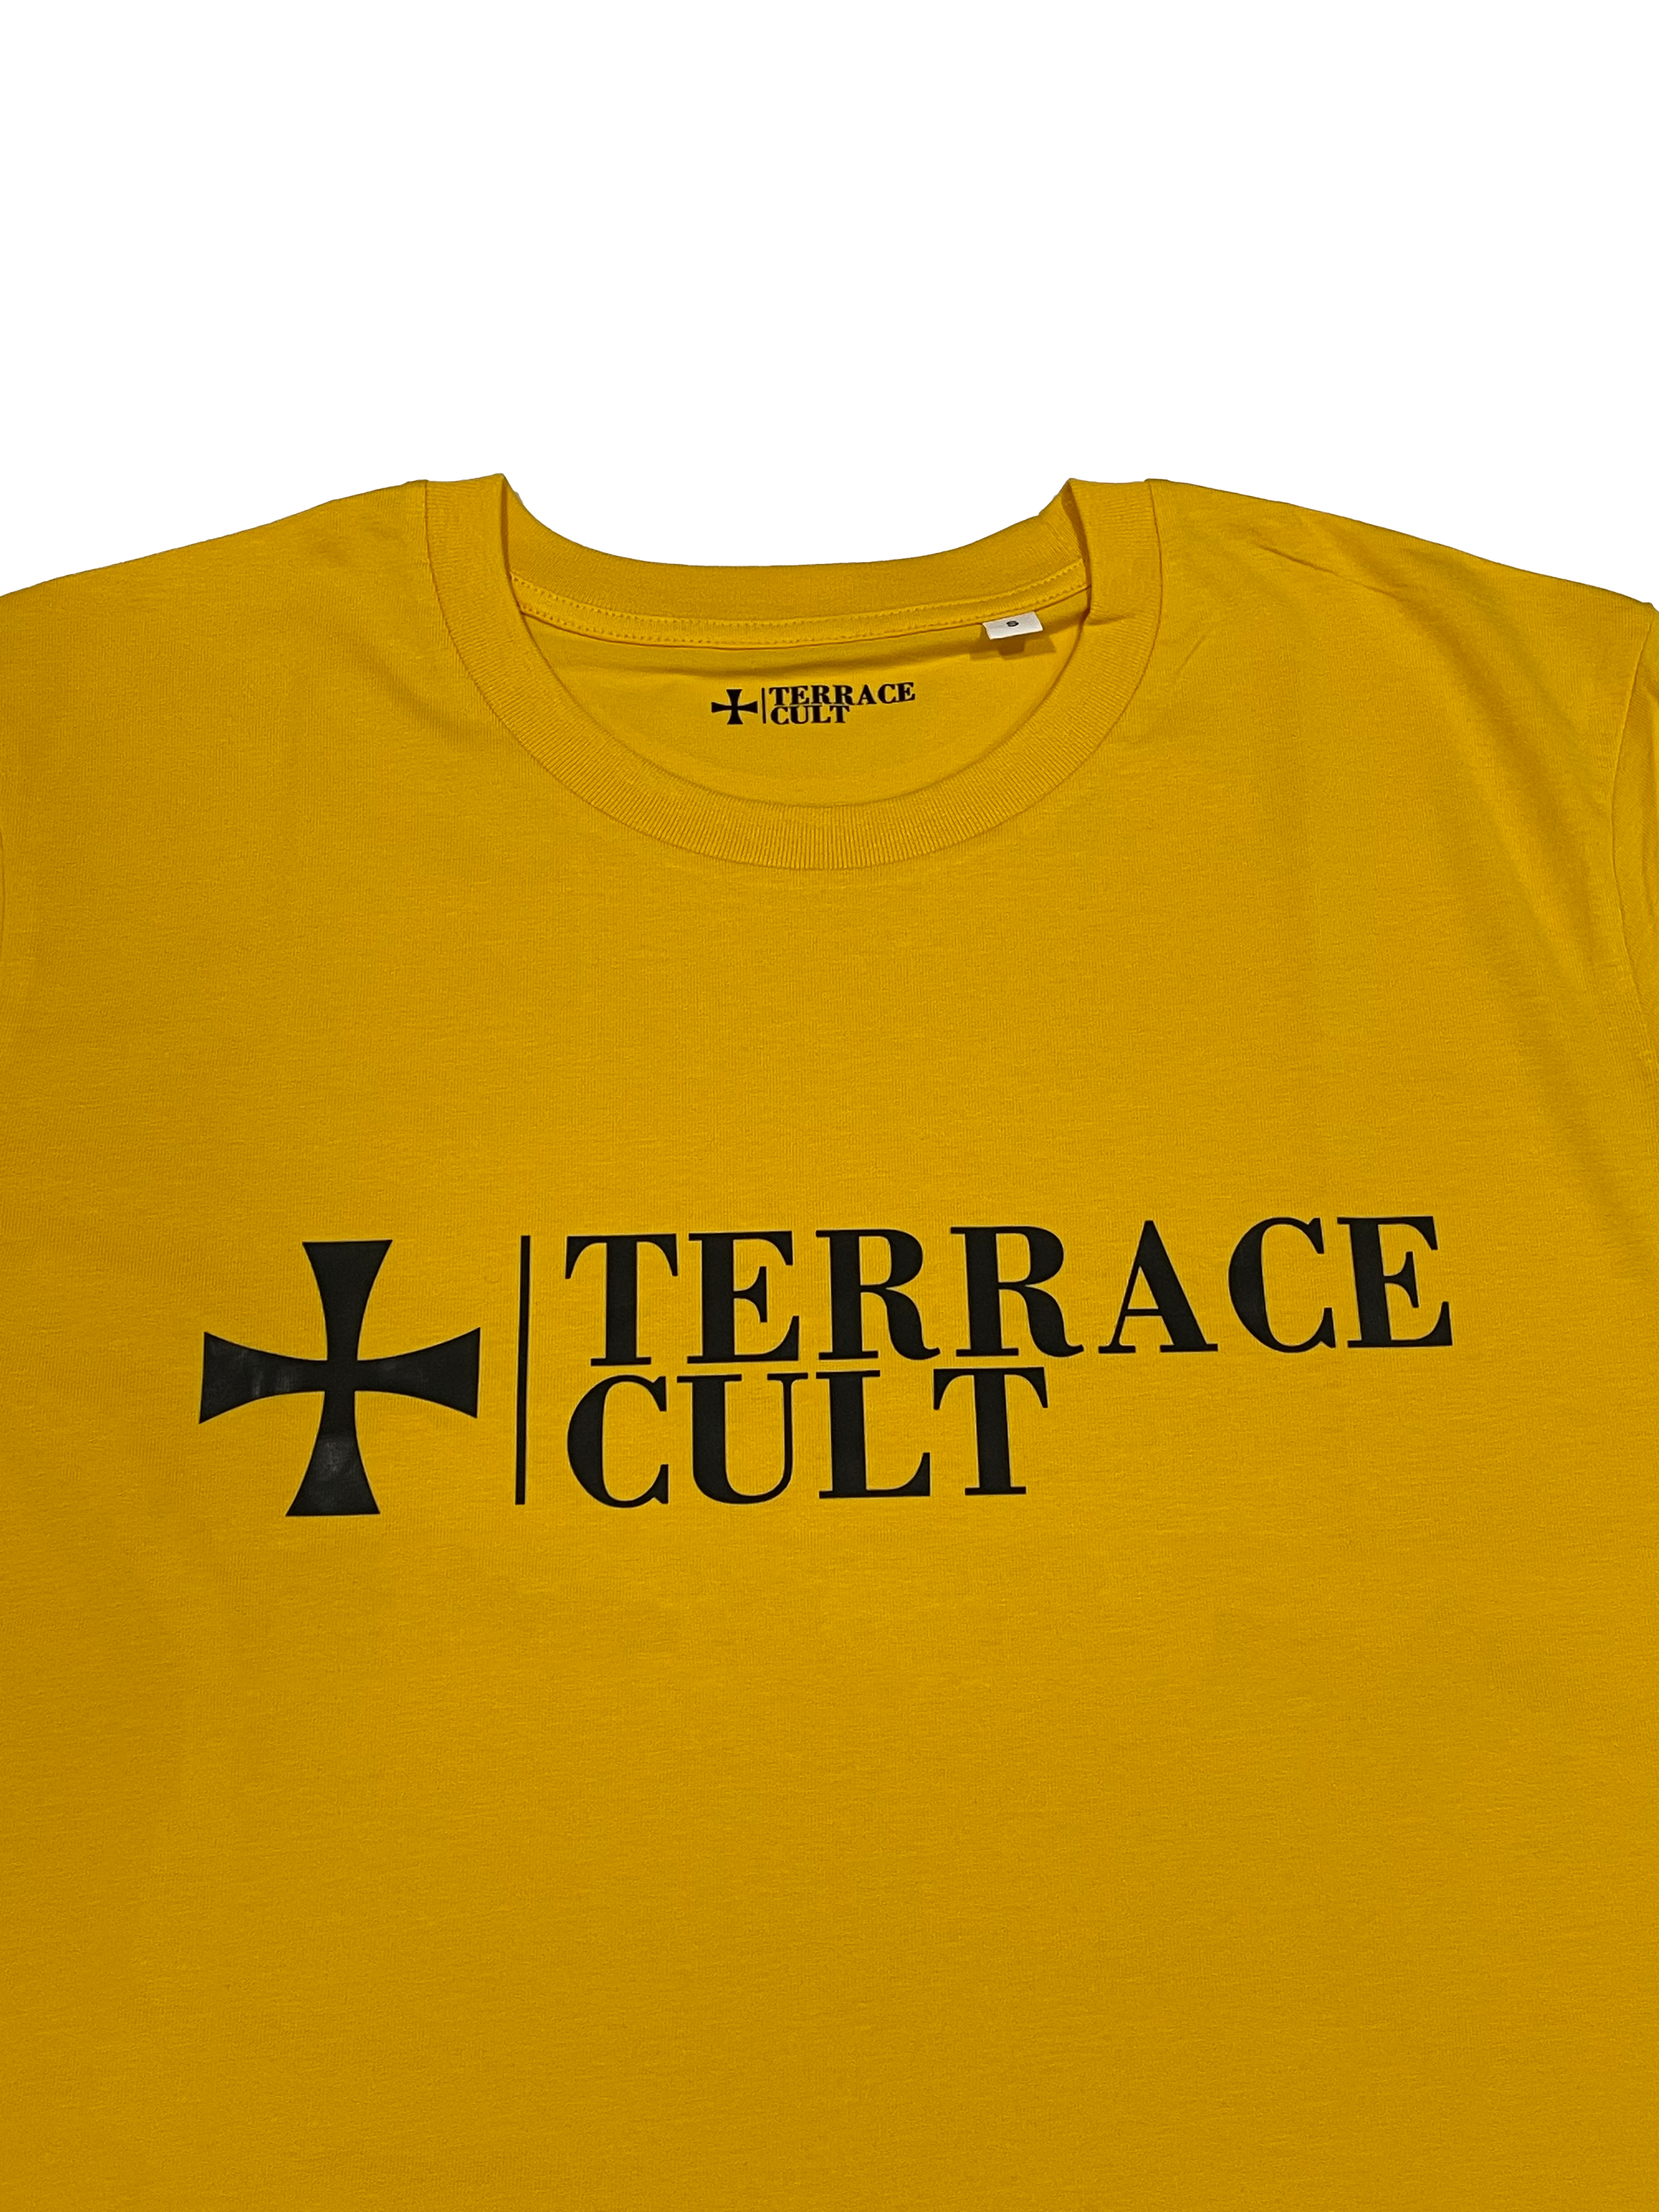 Terrace Cult Logo majica žuta-1